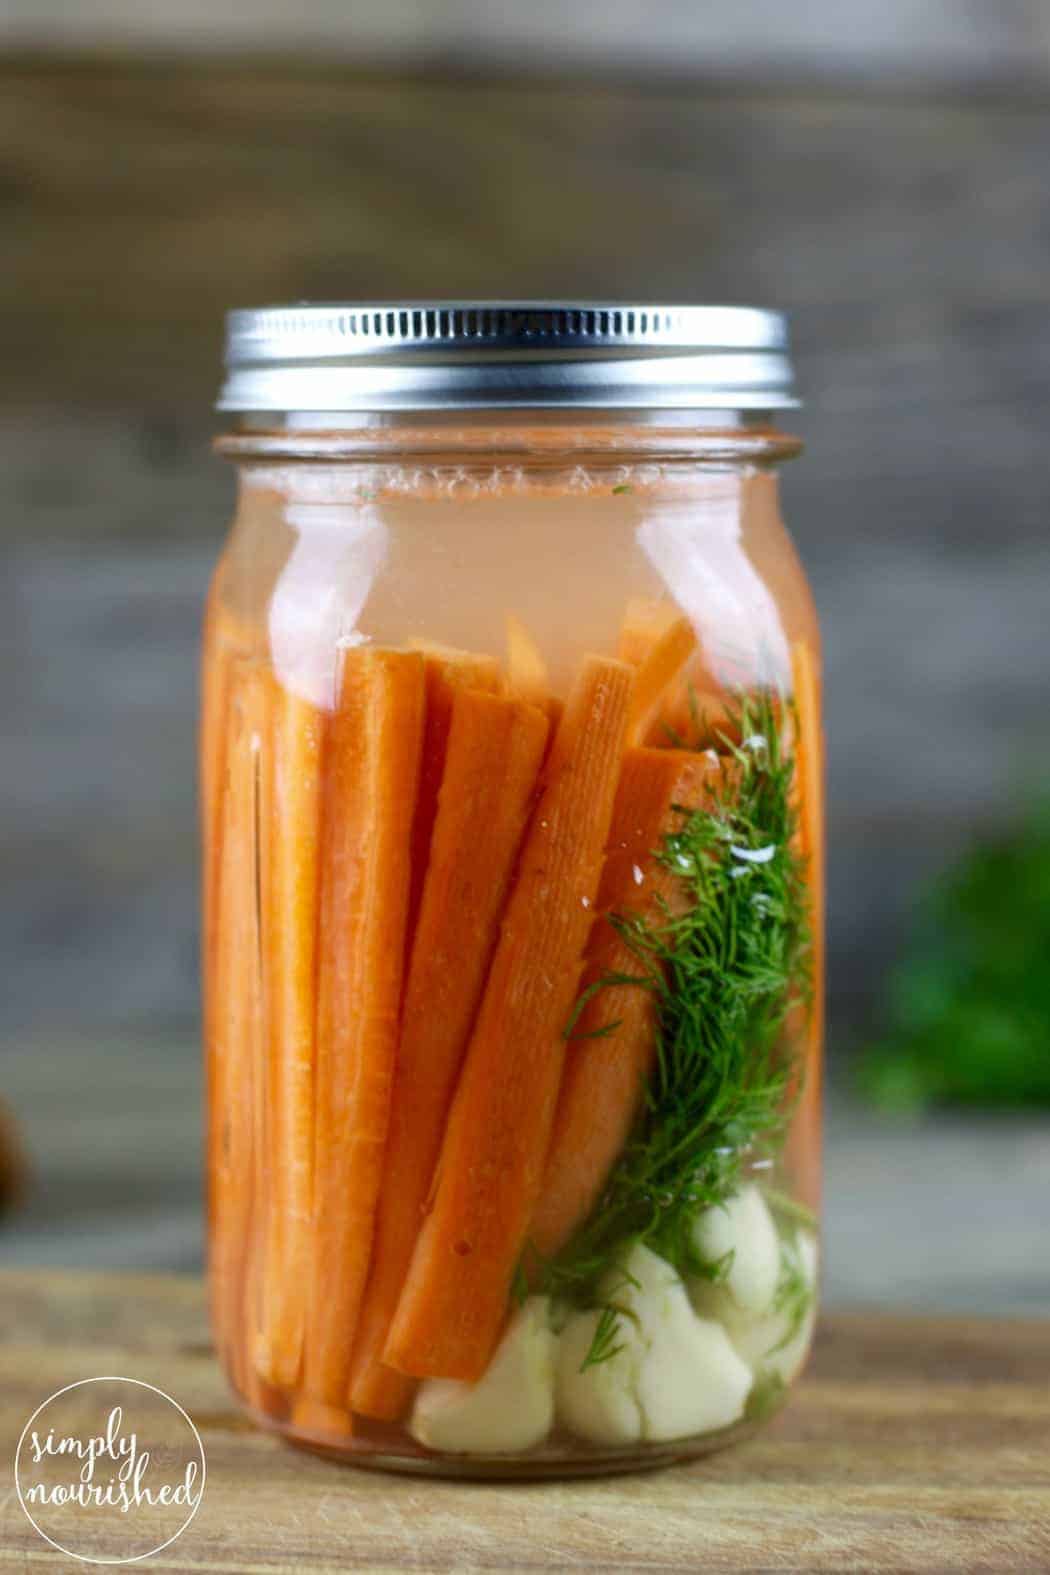 Gegiste wortels met dille | Het fermenteren van voedsel is een oude conserveringsmethode en biedt ook een groot aantal voedingsvoordelen. Verhoog uw immuunsysteem en darmgezondheid met dit eenvoudige recept. 